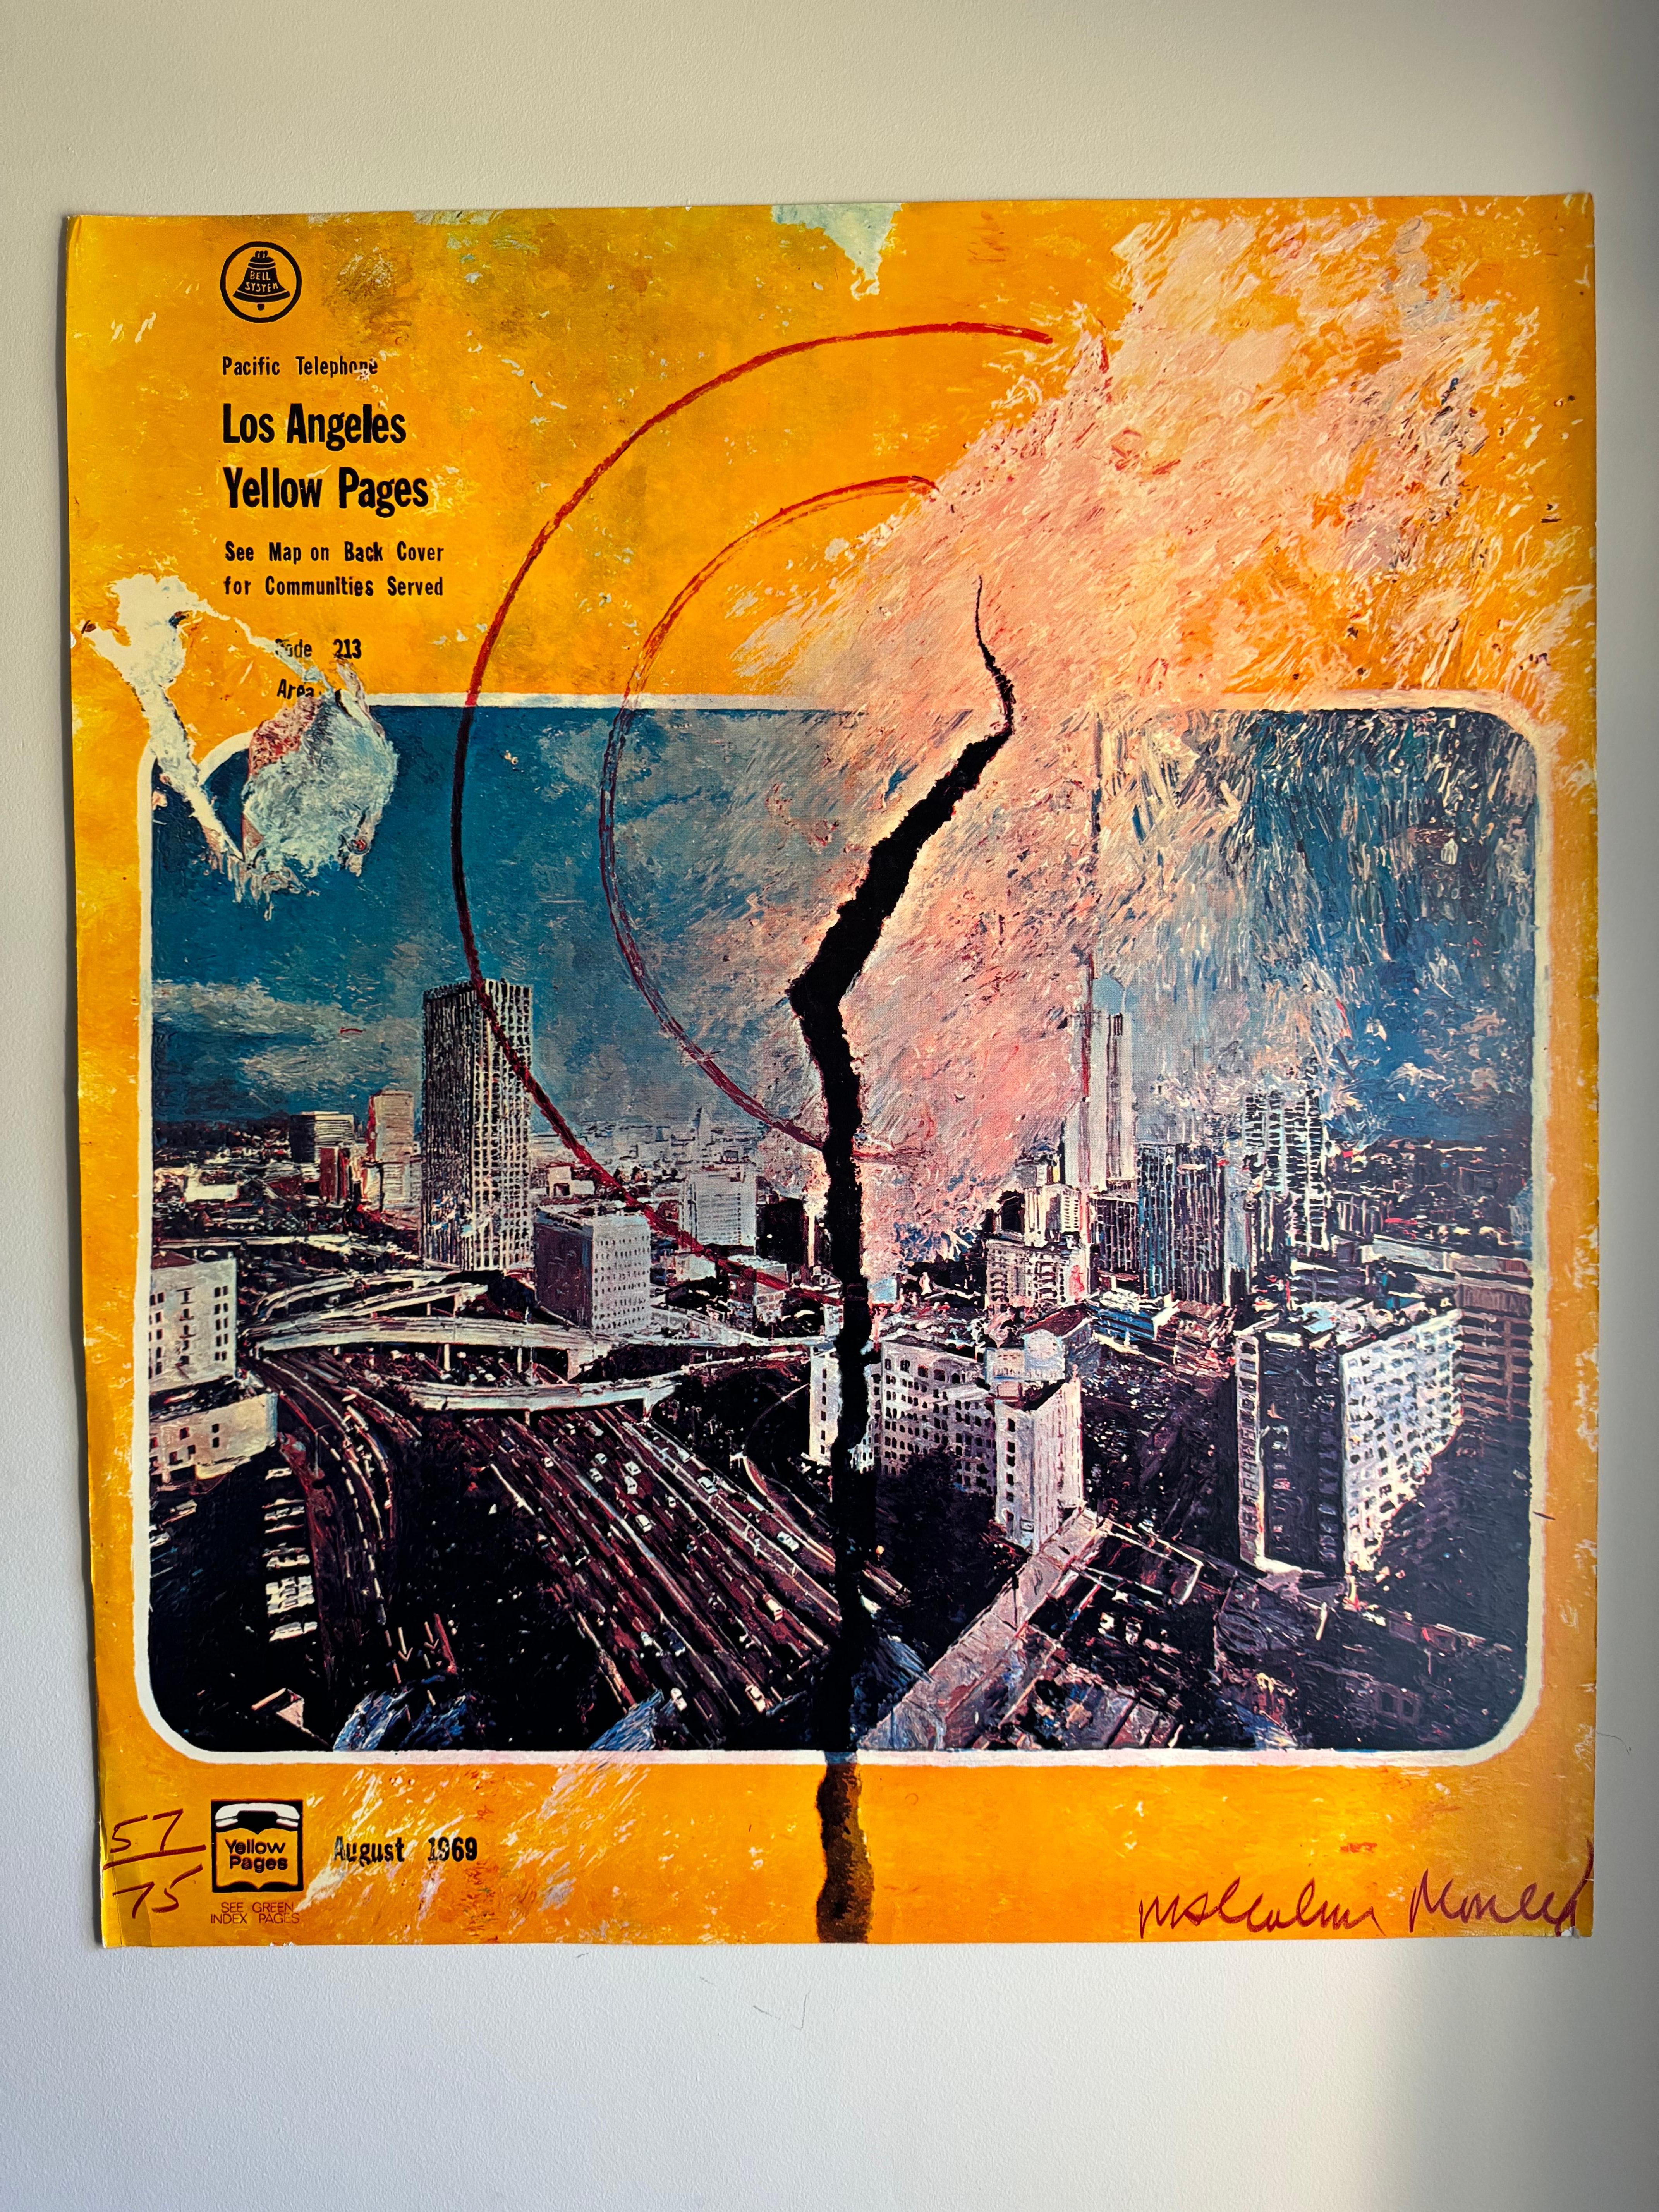 Magnifique imprimé pour Pacific Telephone annonçant les pages jaunes de Los Angeles. Cette estampe a été conçue par Malcolm Morley et publiée en 1969. Cette estampe est marquée (57/75) et signée par l'artiste dans la planche.

Dans l'ensemble, ce